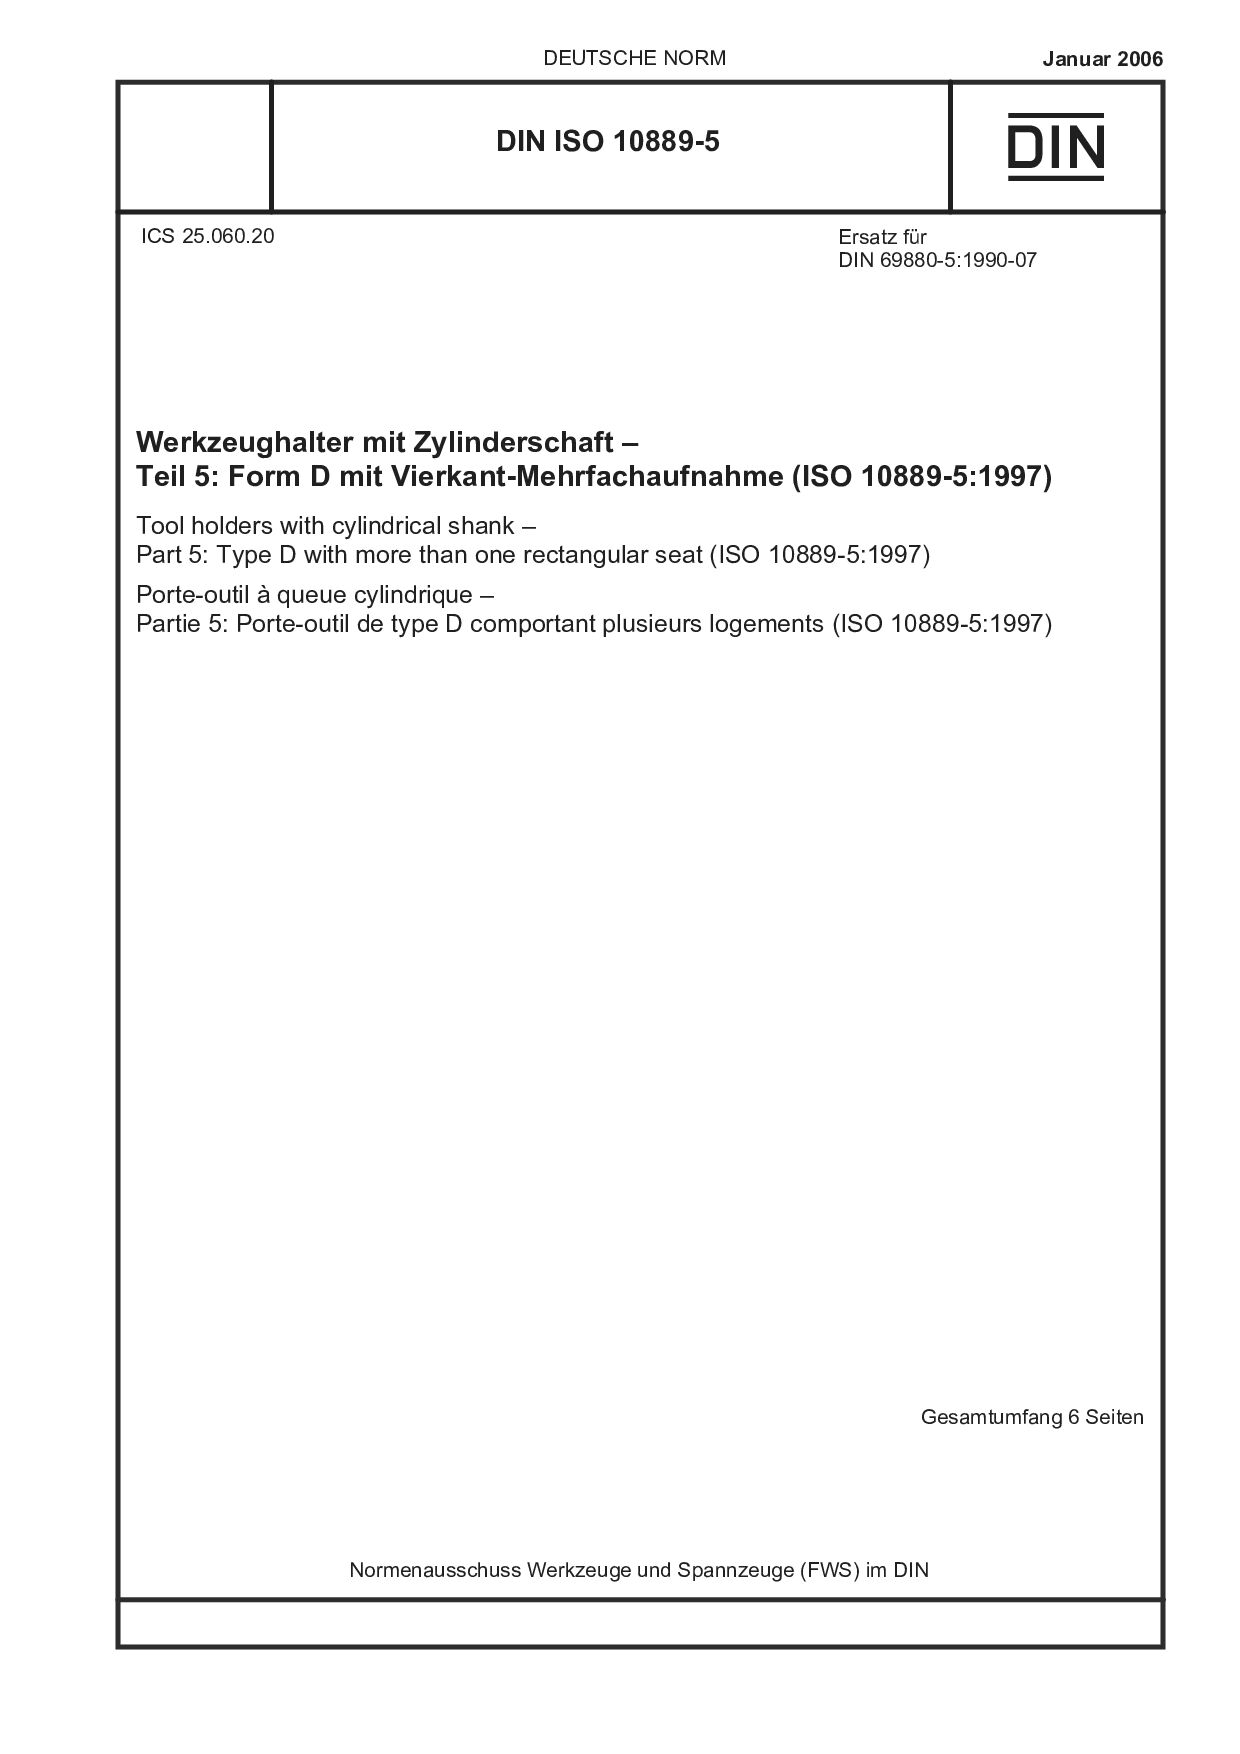 DIN ISO 10889-5:2006封面图